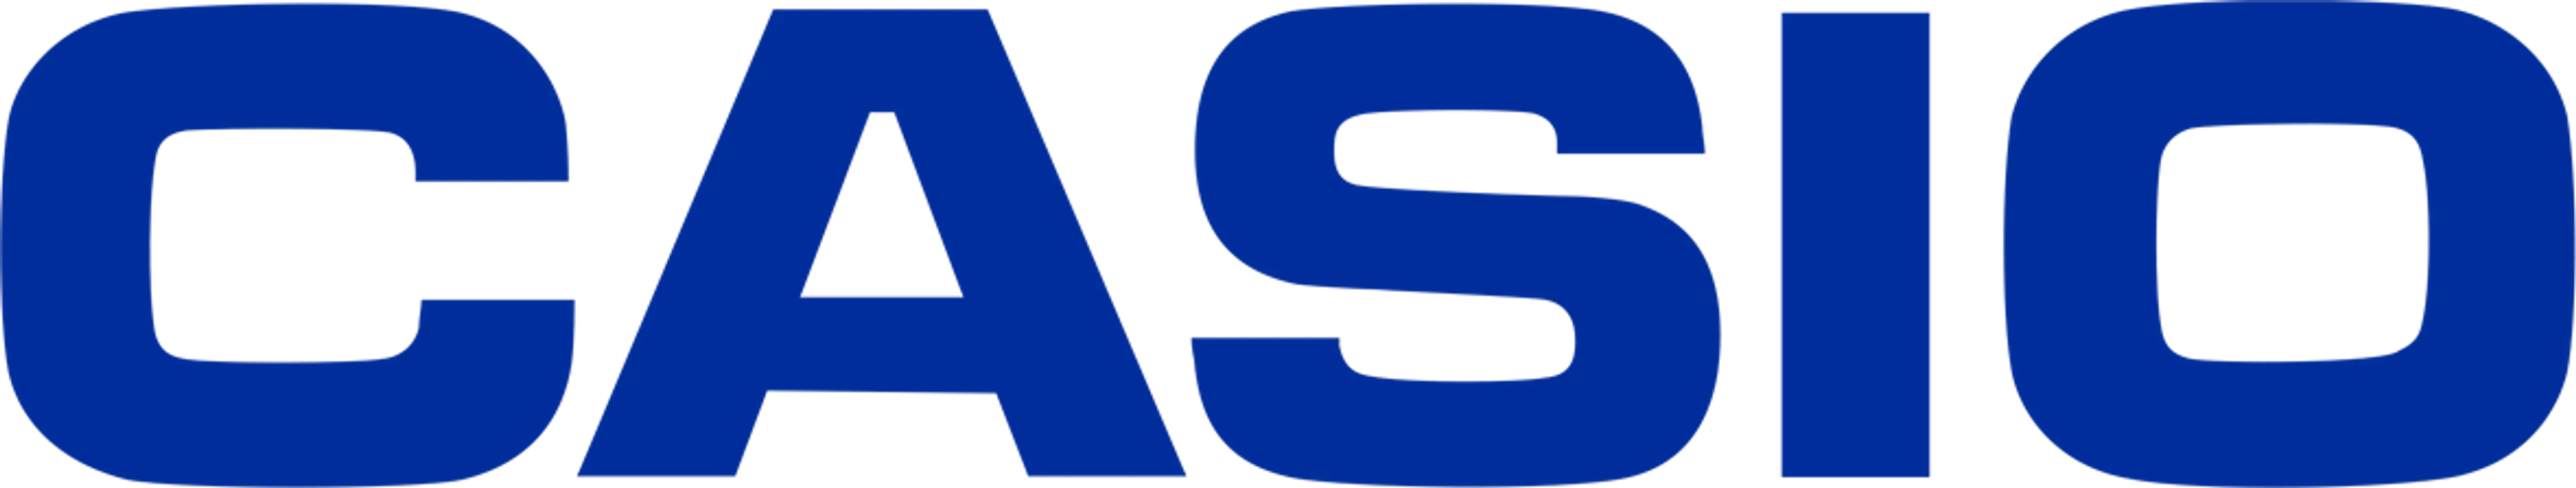 CASIO logo